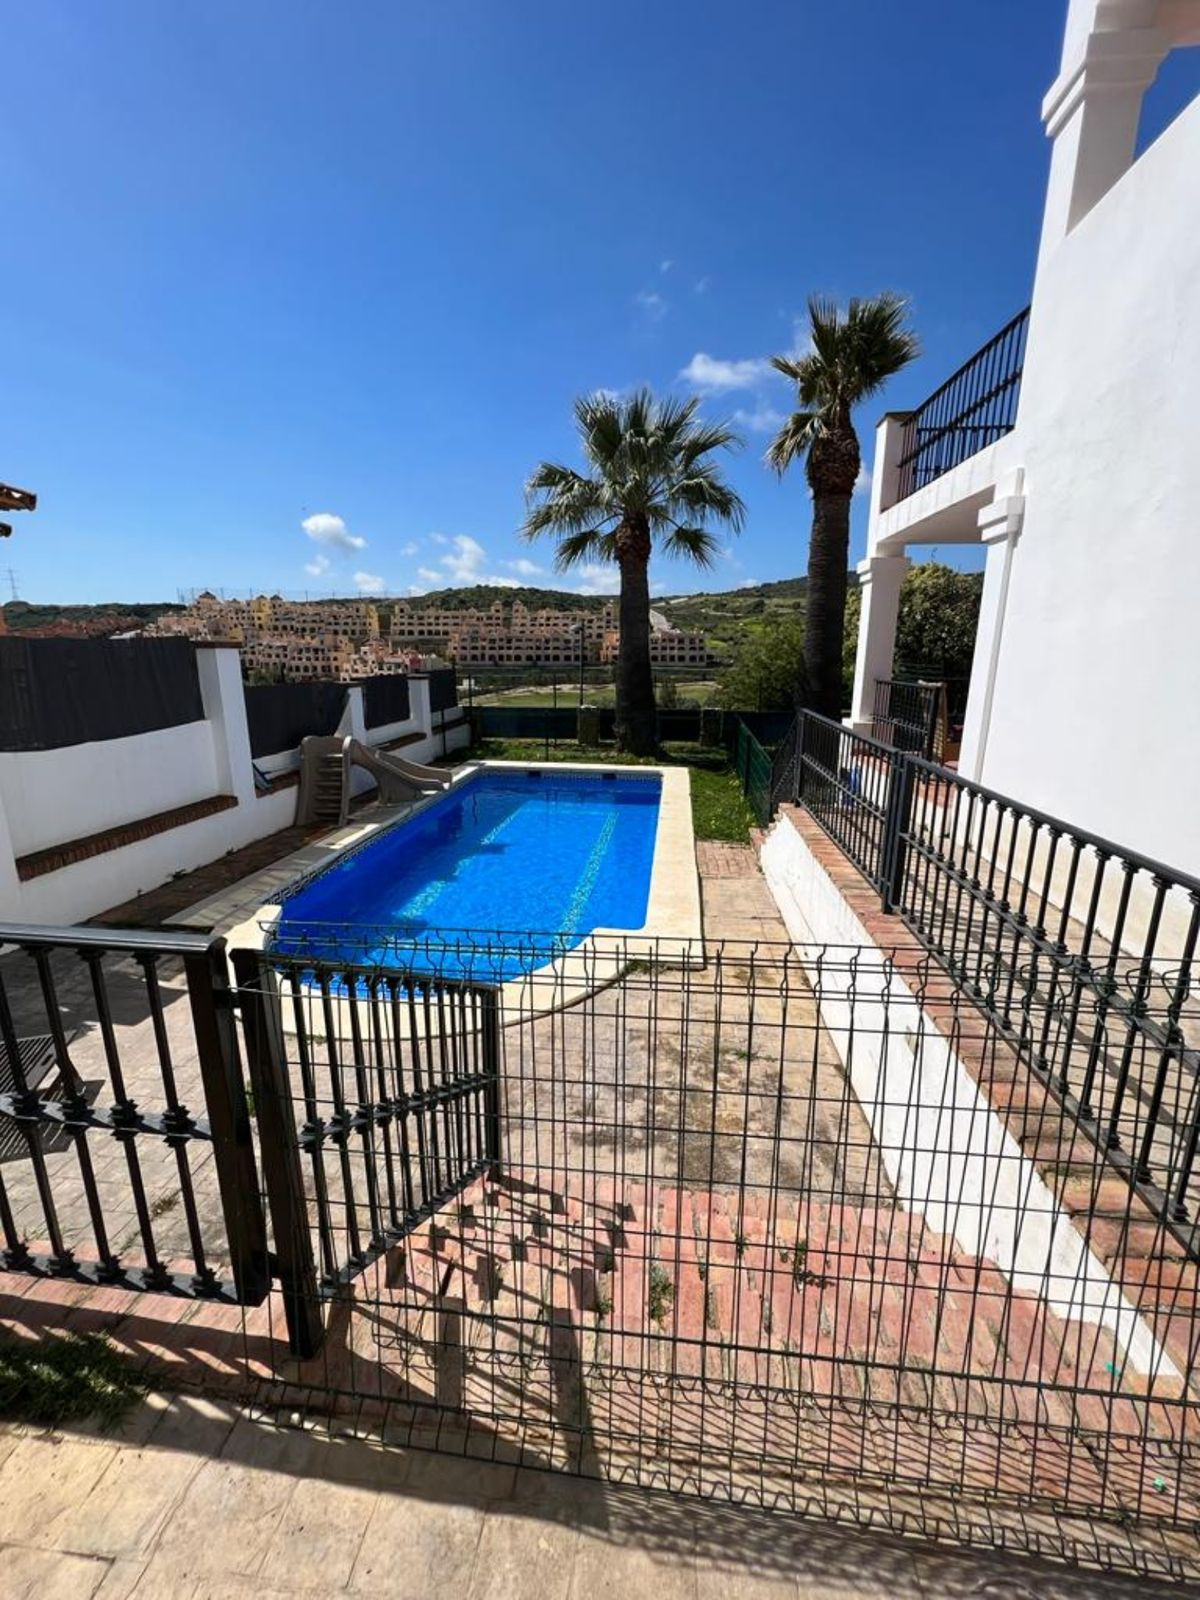 Detached Villa, Valle Romano, Costa del Sol.
4 Bedrooms, 3 Bathrooms, Built 260 m², Garden/Plot 400 , Spain